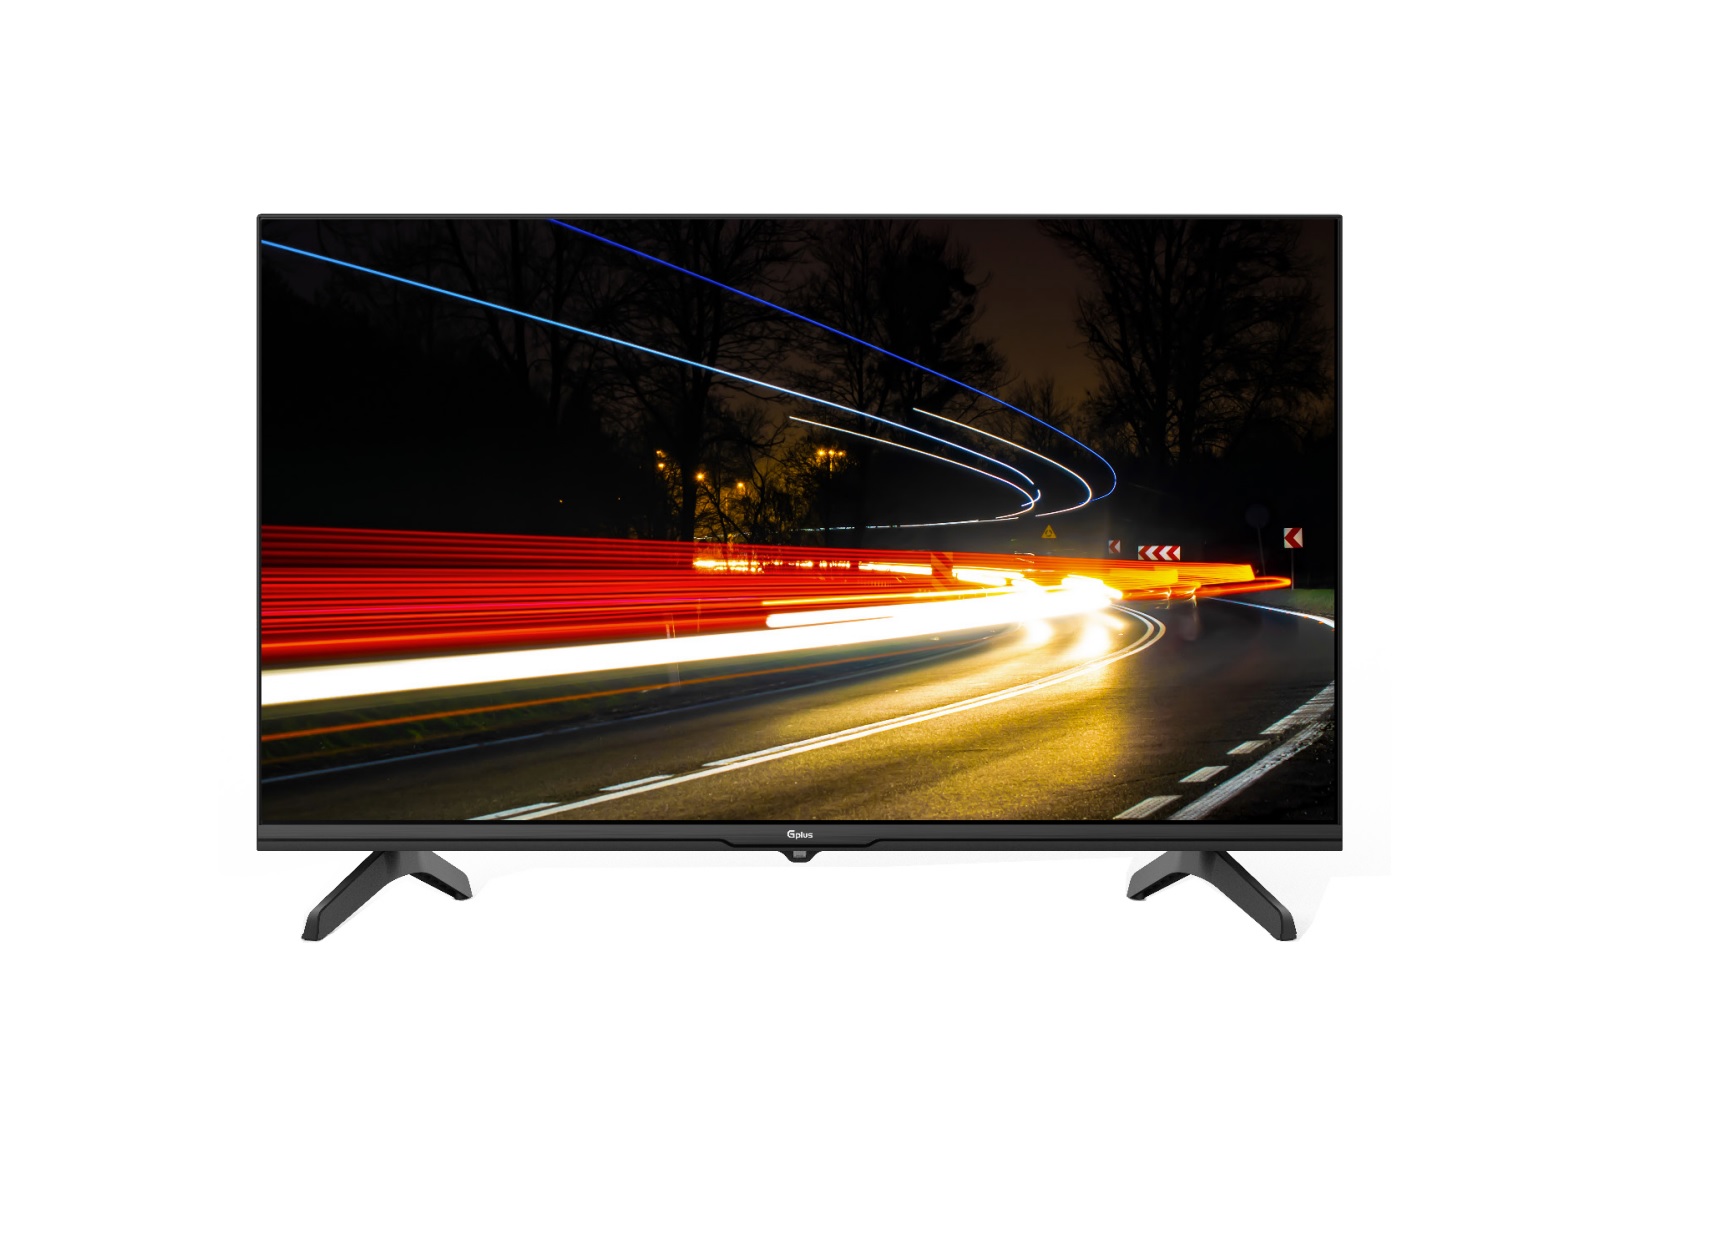 تلویزیون هوشمند 32 اینچ - GTV-32PD618N